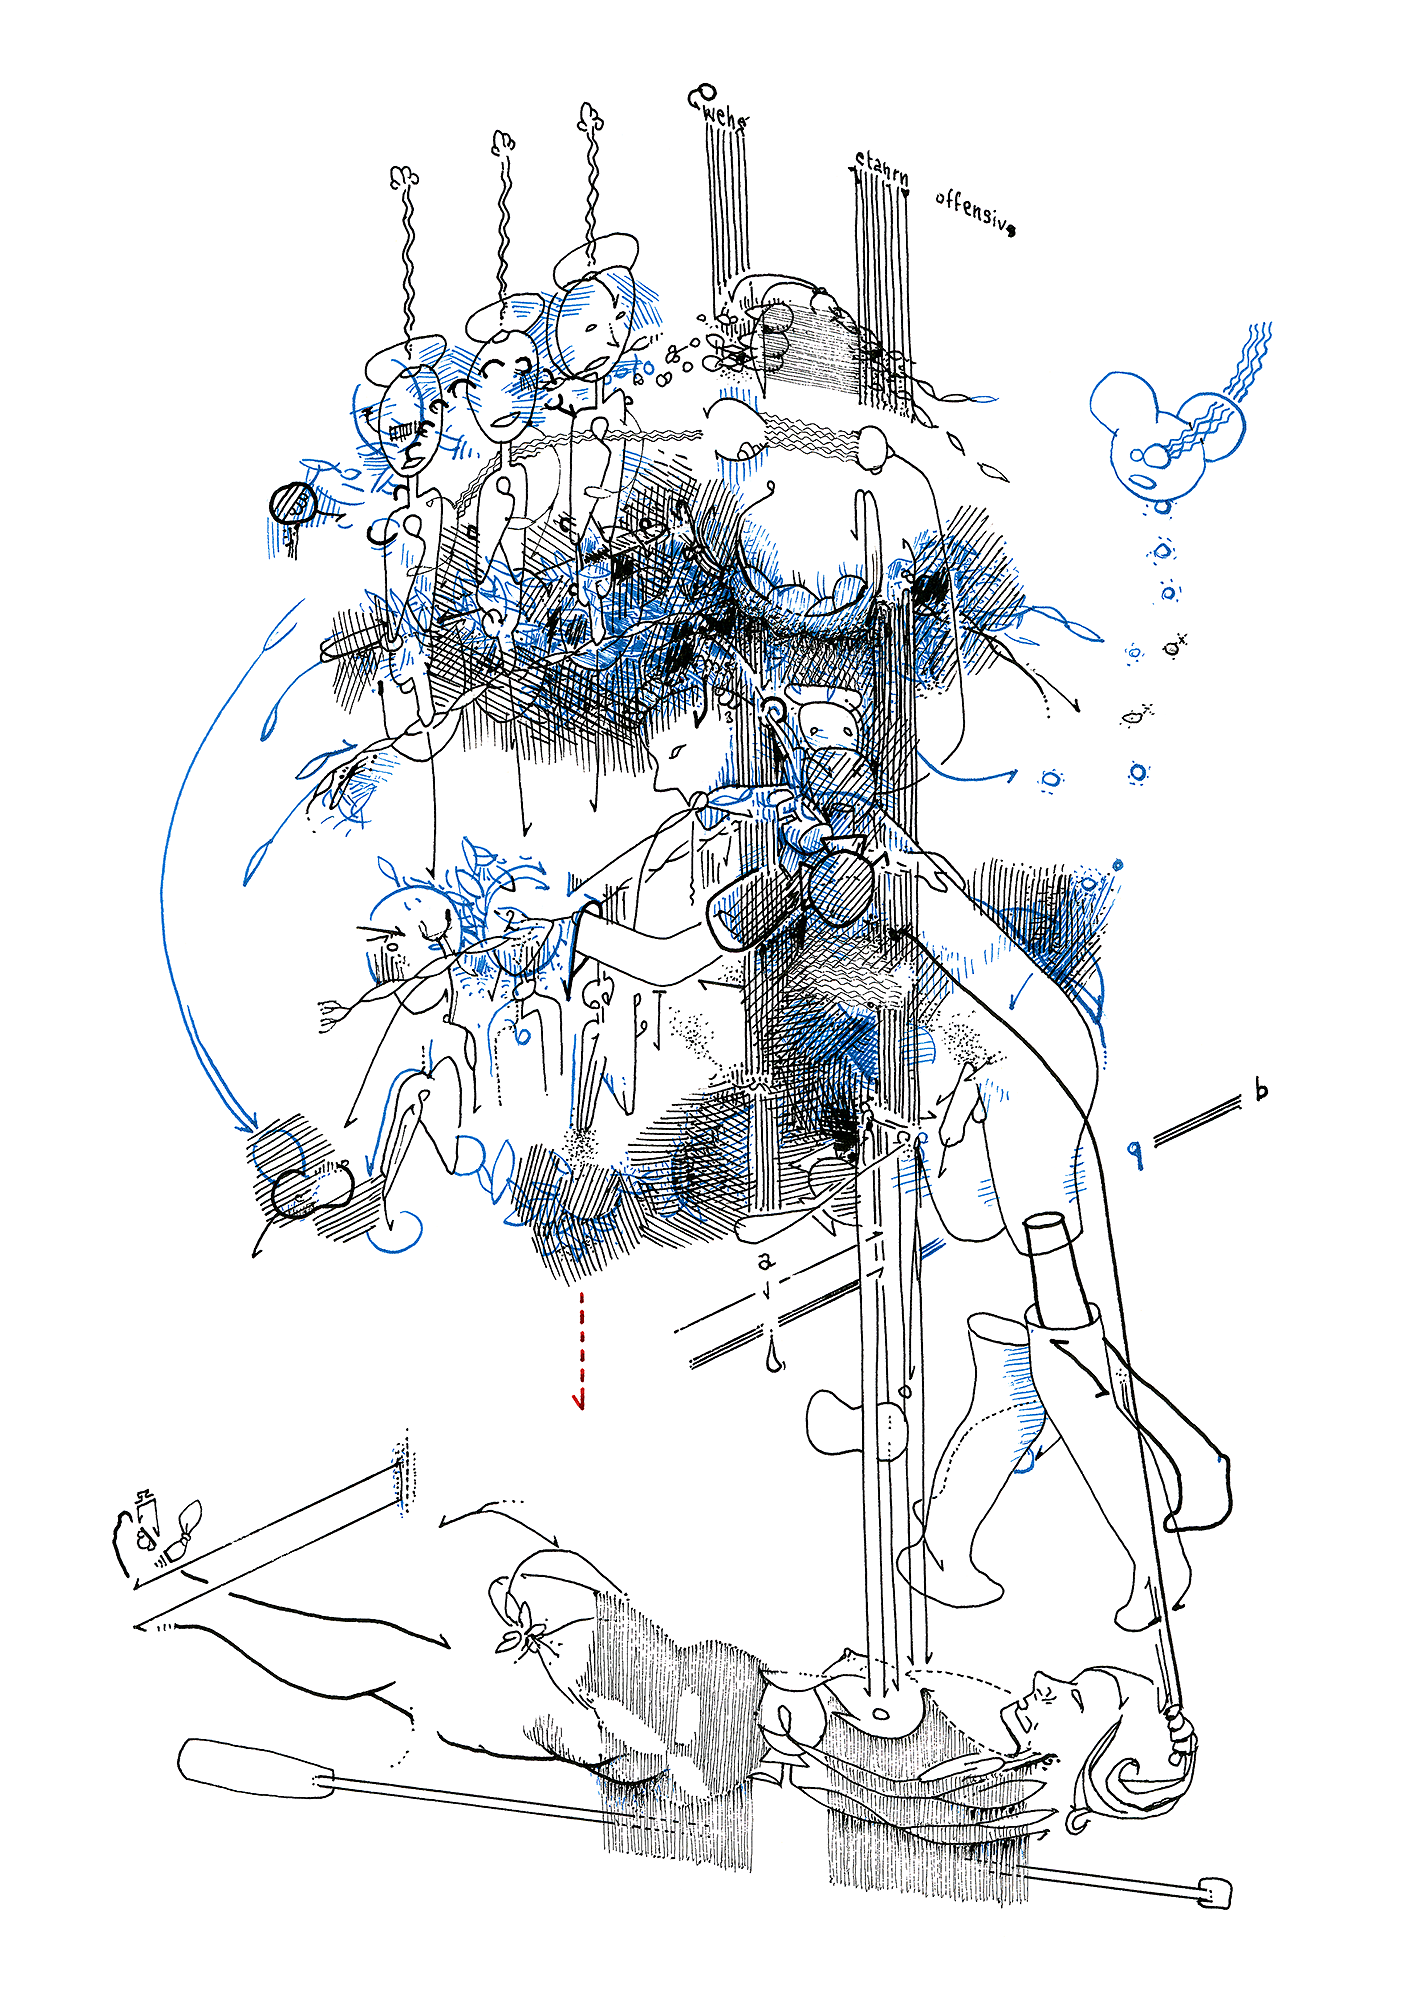 Hannes Kater: Tageszeichnung (Zeichnung/drawing) vom 28.11.2015 (1414 x 2000 Pixel)